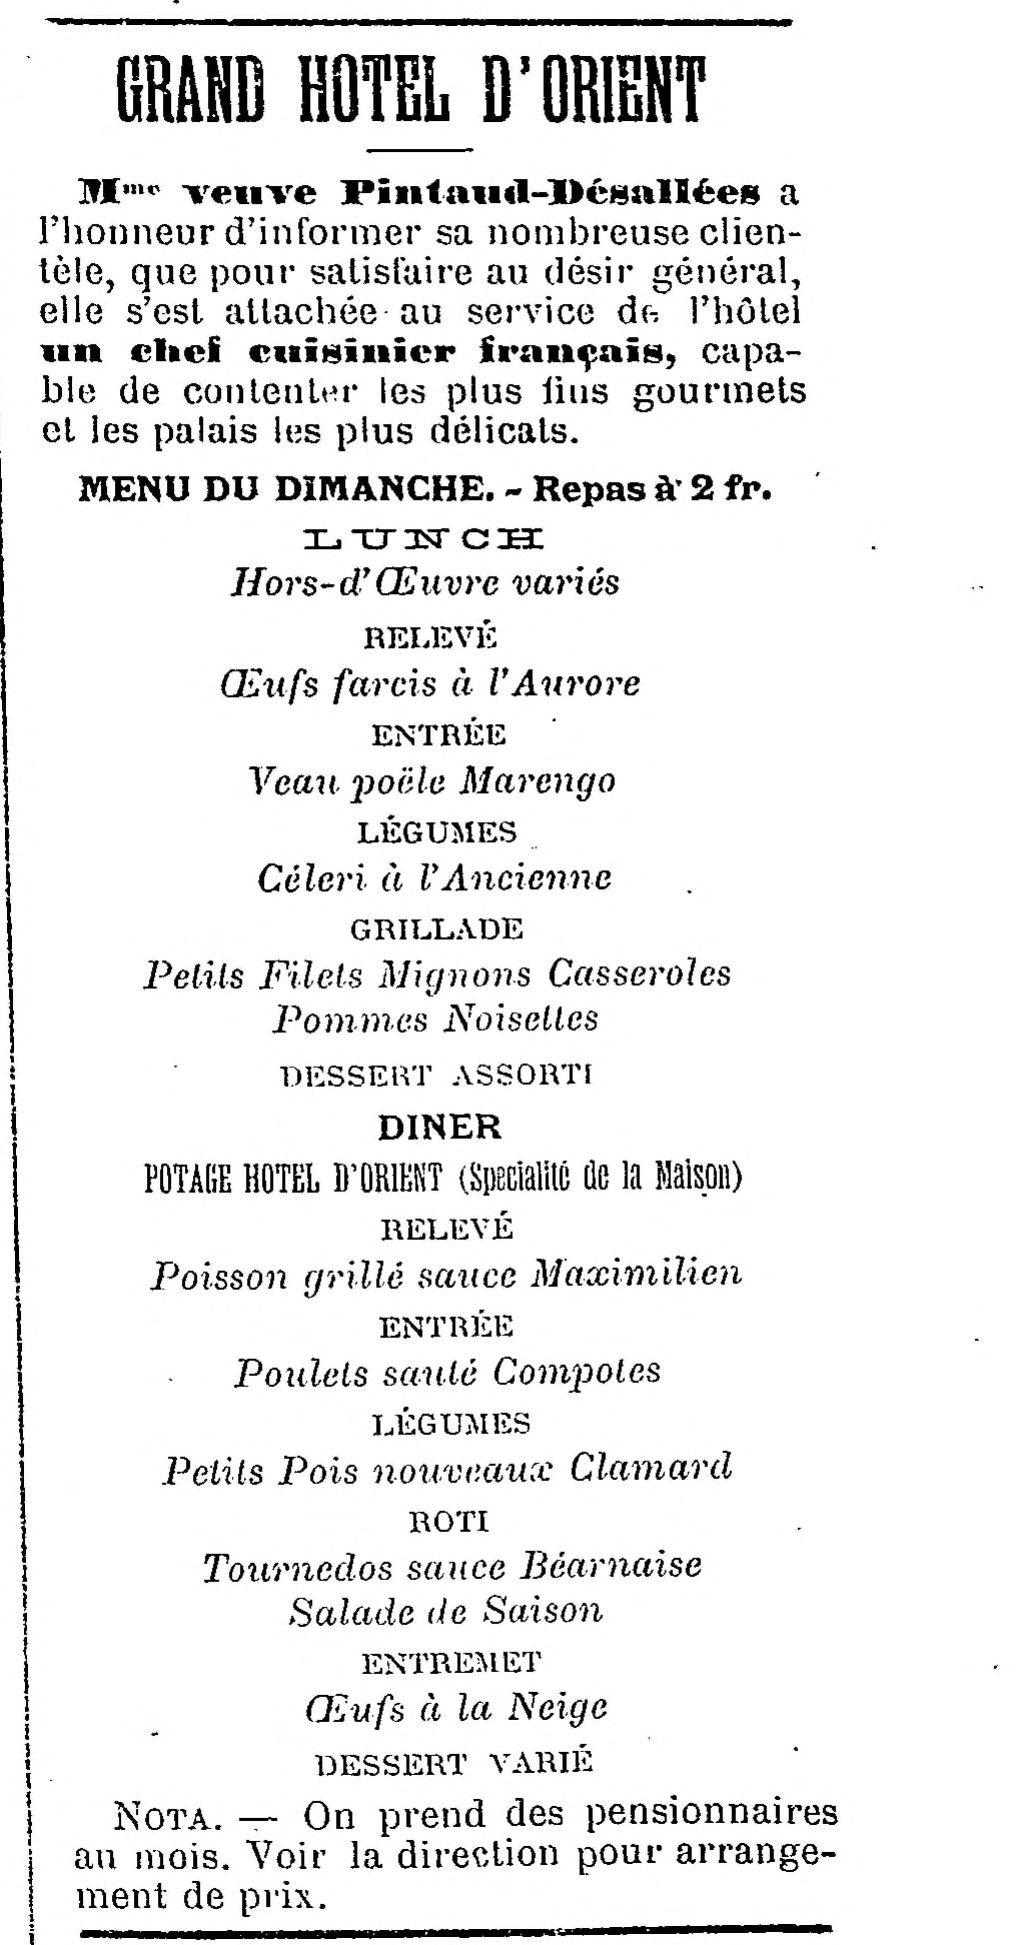 L'impartial en 1906.recette à la clamard.jpg